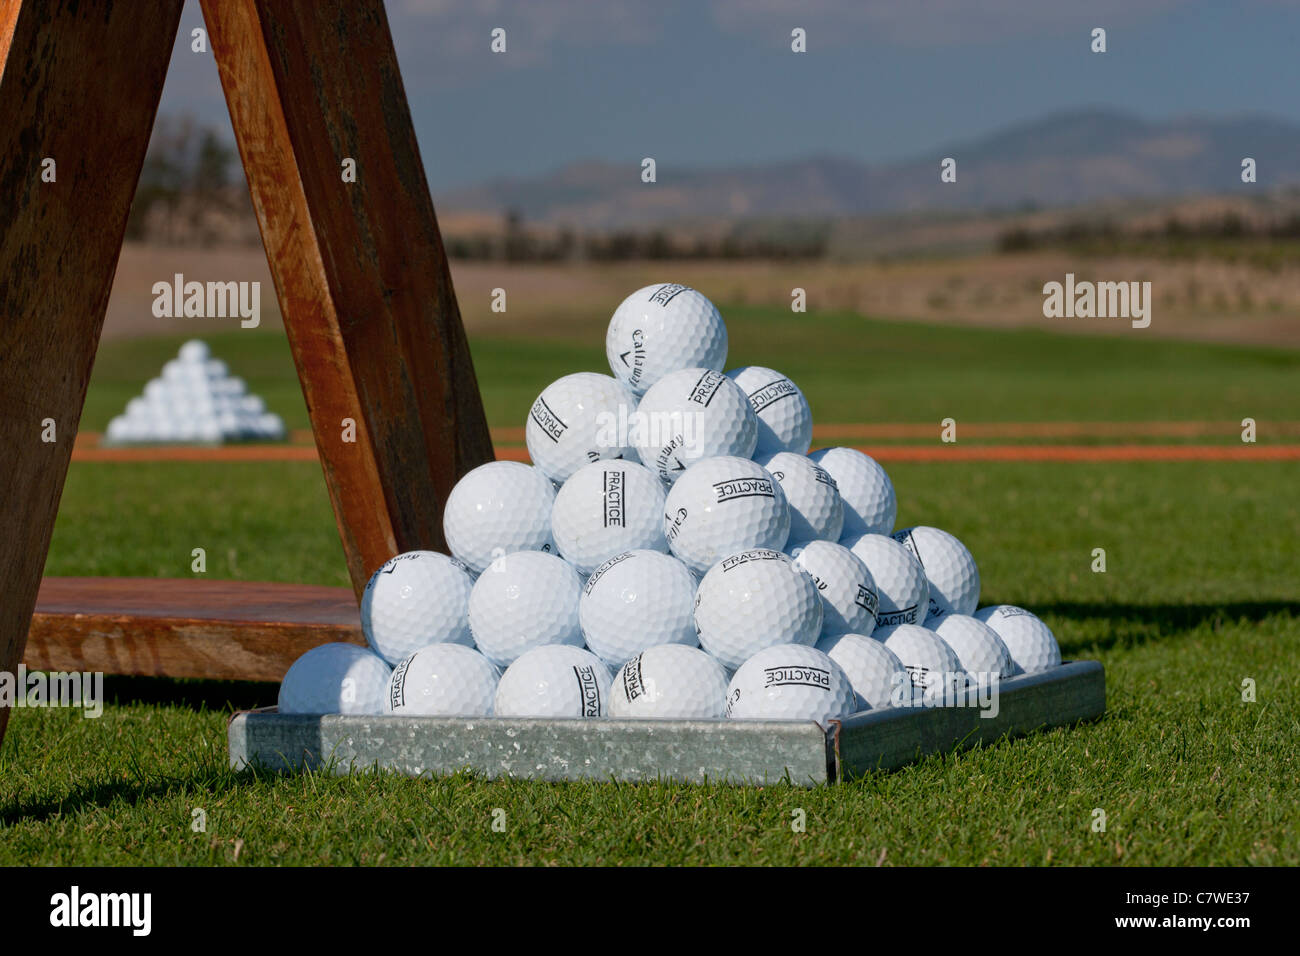 Piramide di palline da golf in un campo da golf driving range pratica Foto  stock - Alamy